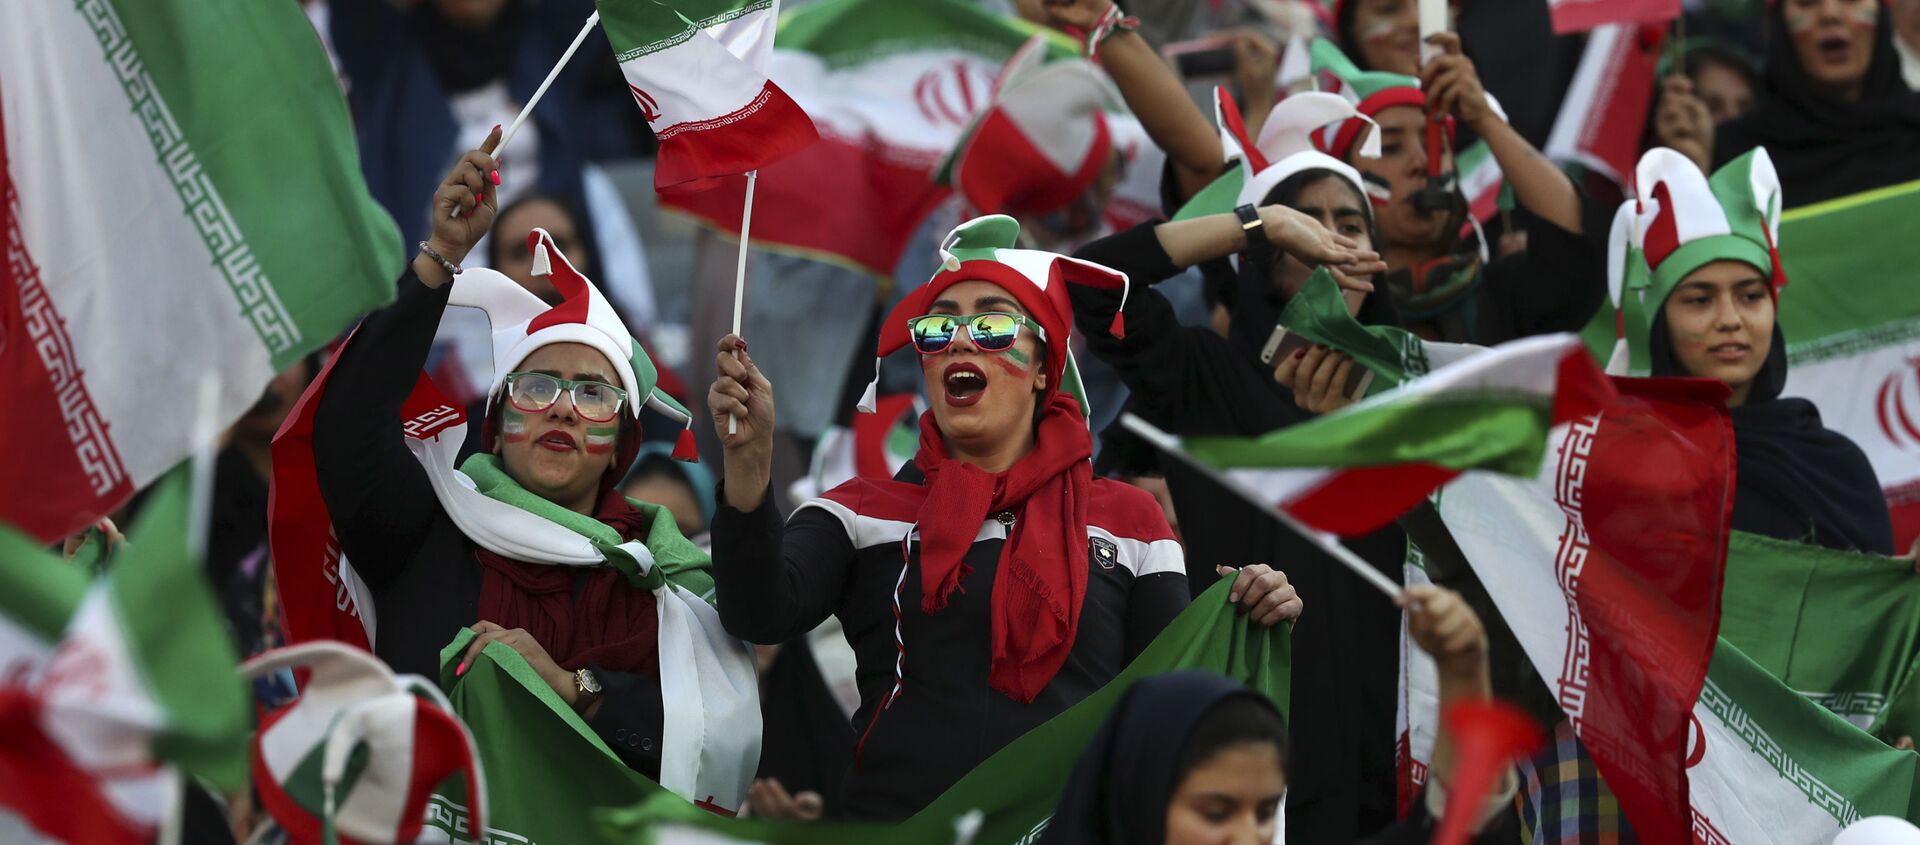 İranlı kadın taraftarlar 40 yıllık bir aranın ardından ilk kez bir futbol maçını izlemek için tribüne geldi. - Sputnik Türkiye, 1920, 10.10.2019